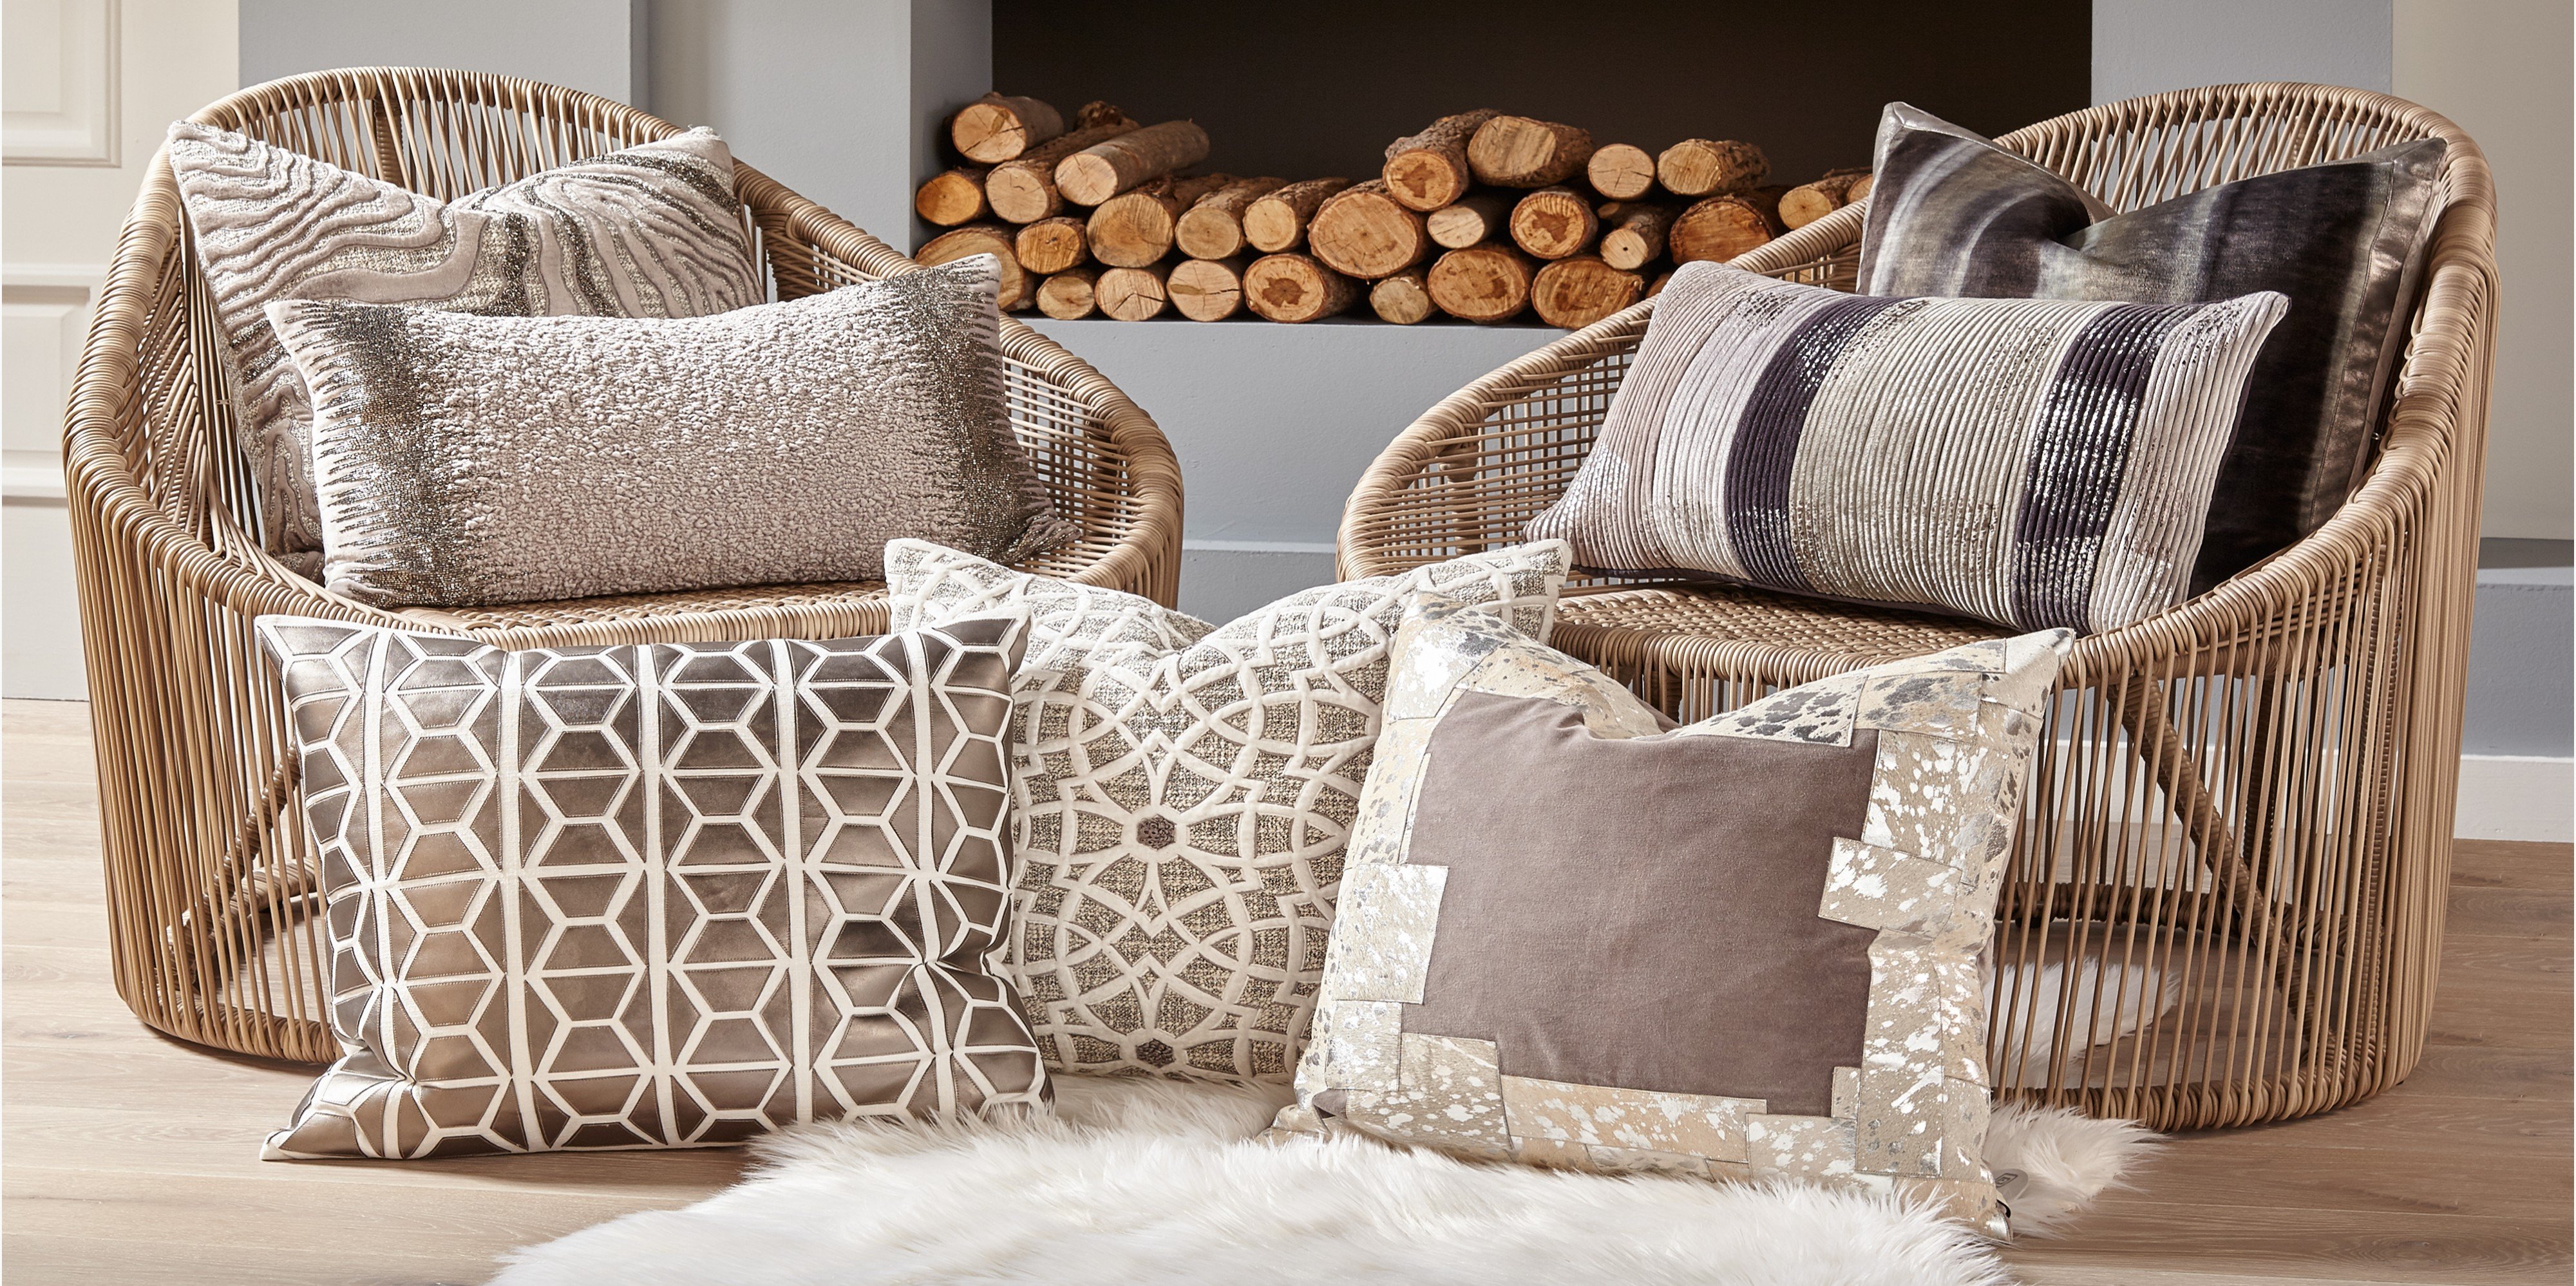 Подушка с вышивкой – традиционные текстильные украшения для уюта в доме